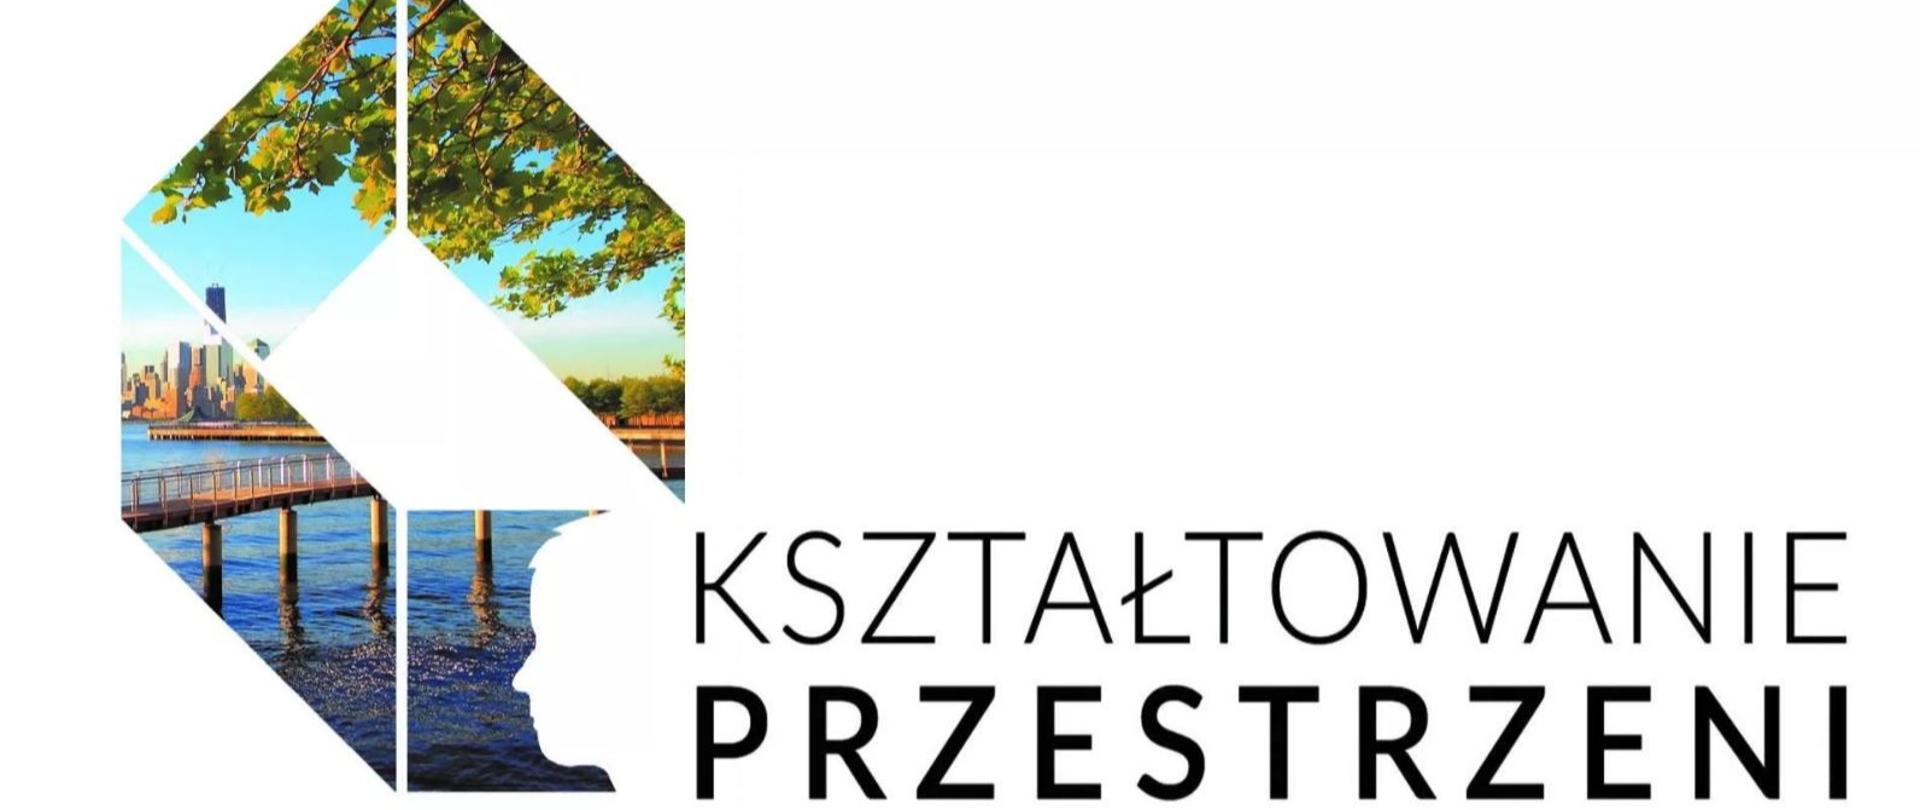 logo Kształtowania Przestrzeni przyznawany przez Izbę Architektów Rzeczpospolitej Polskiej 